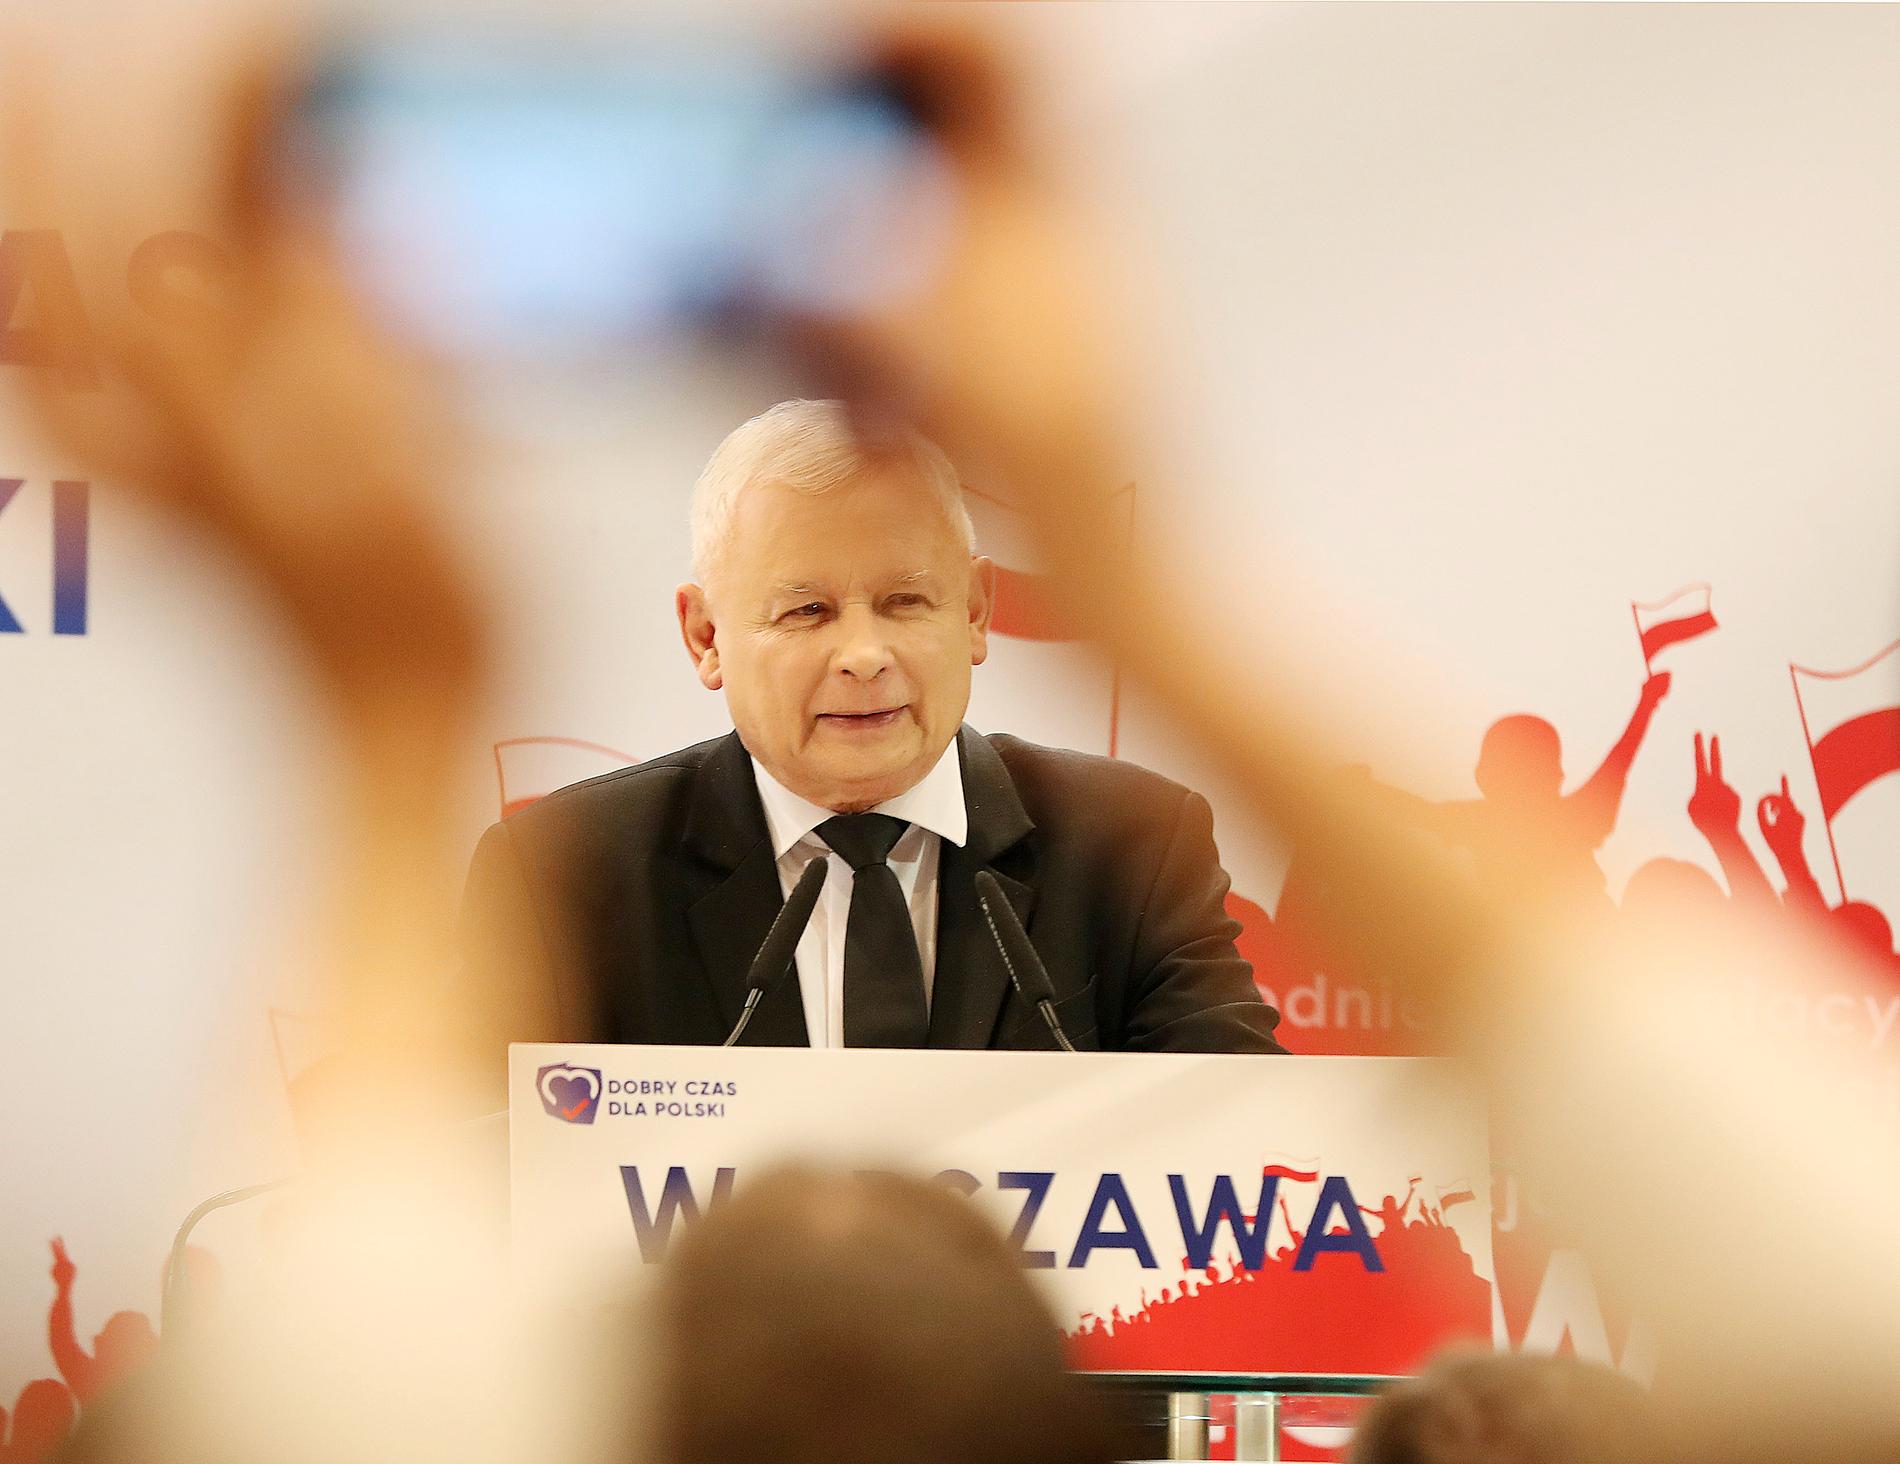 Jaroslaw Kaczynski är ledare för Lag och rättvisa, och anses vara den man som har mest makt i Polen.